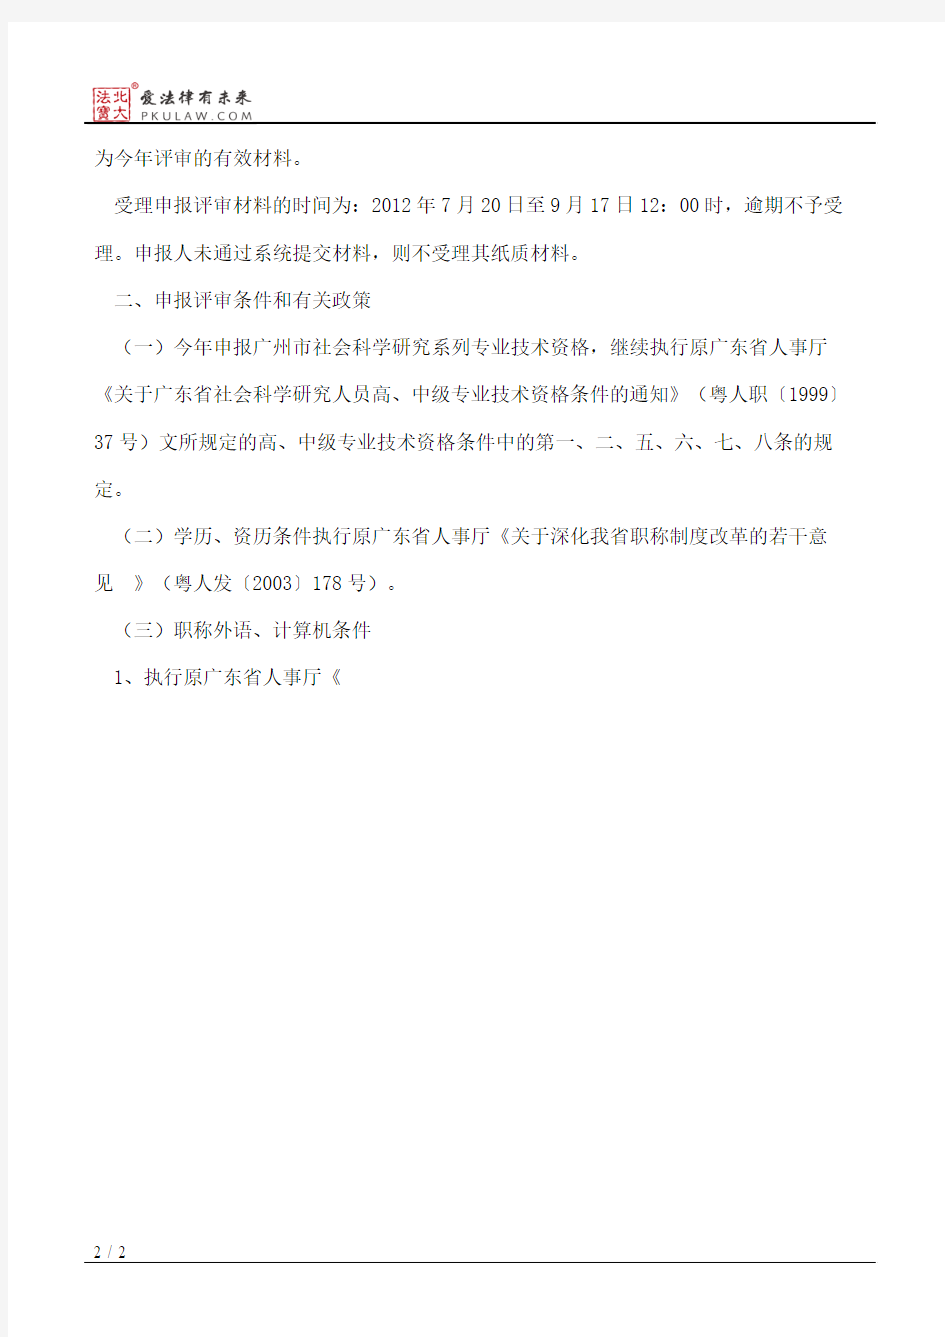 广州市社会科学院职改办关于做好广州市社会科学研究系列高、中级